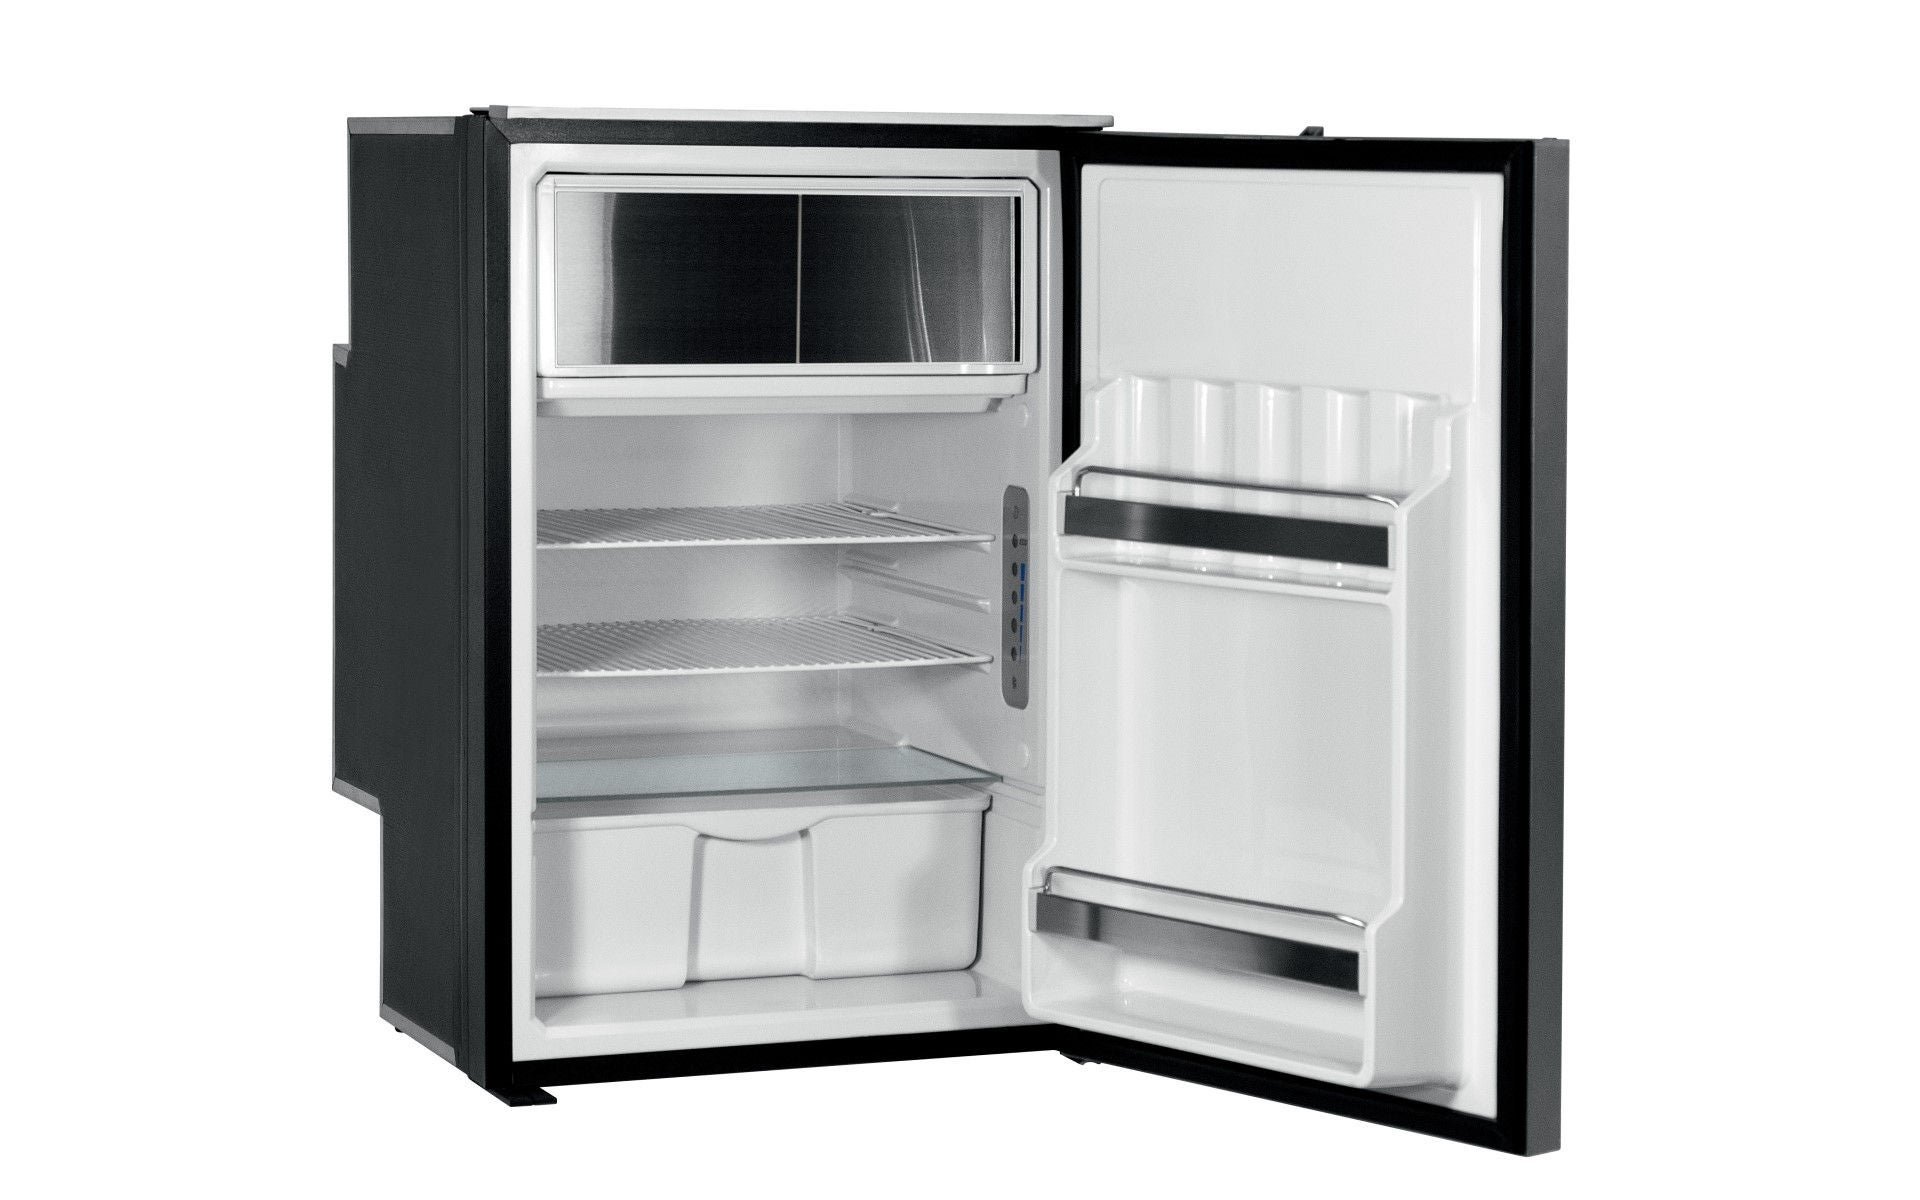 Product picture of Freeline 115 Elegance fridge with open door